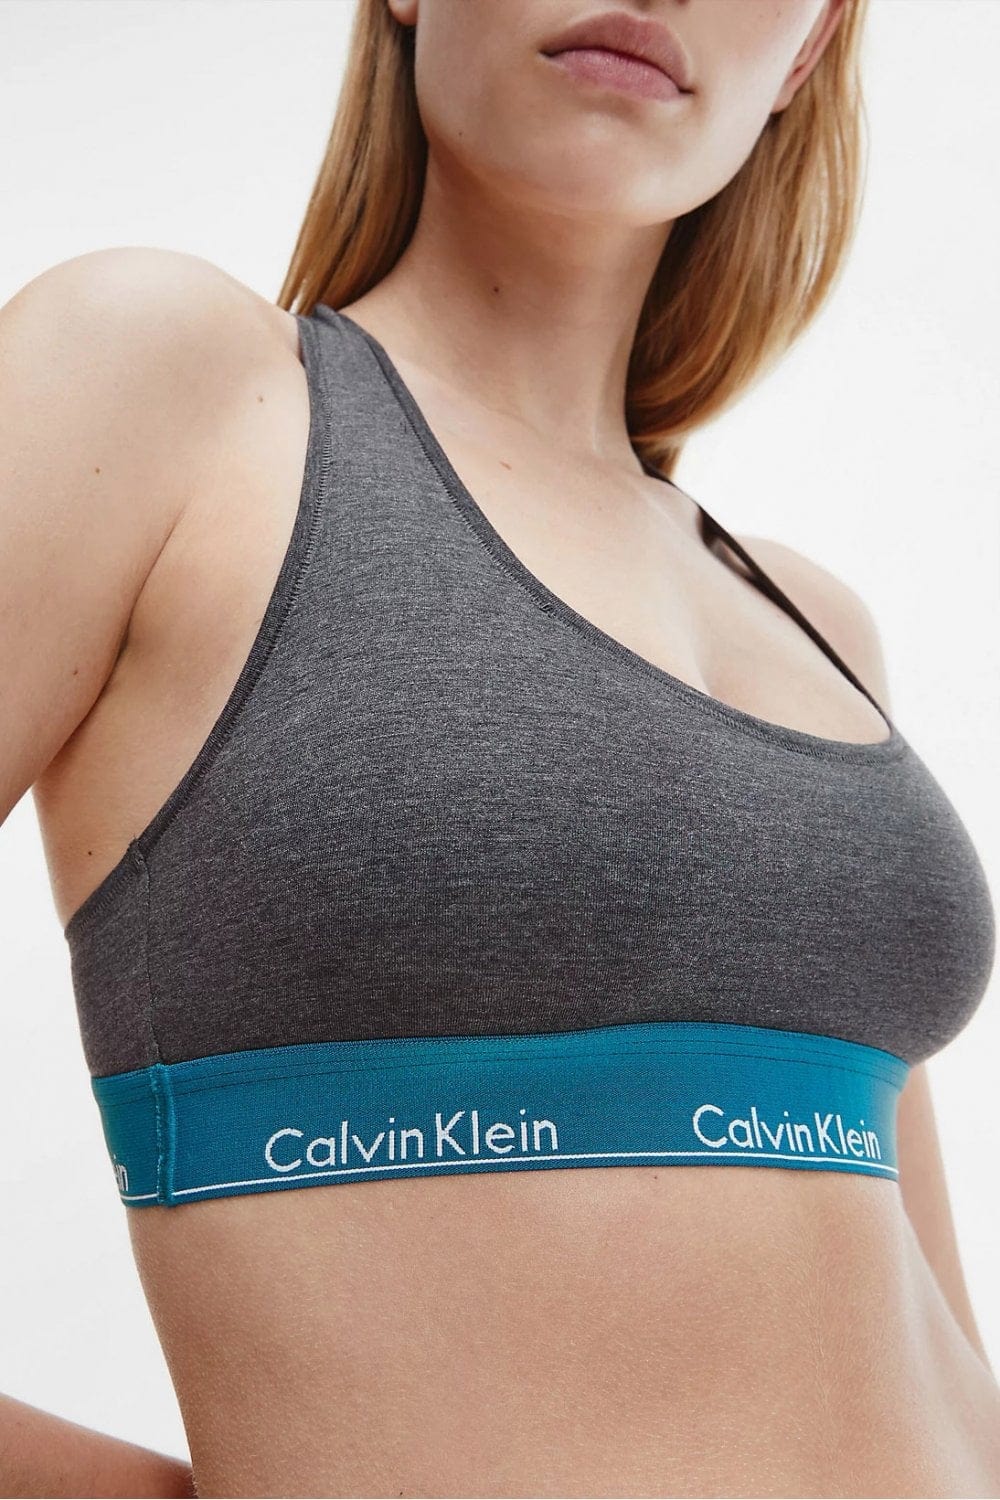 Calvin Klein Women's Modern Cotton Triangle Bra, Topaz